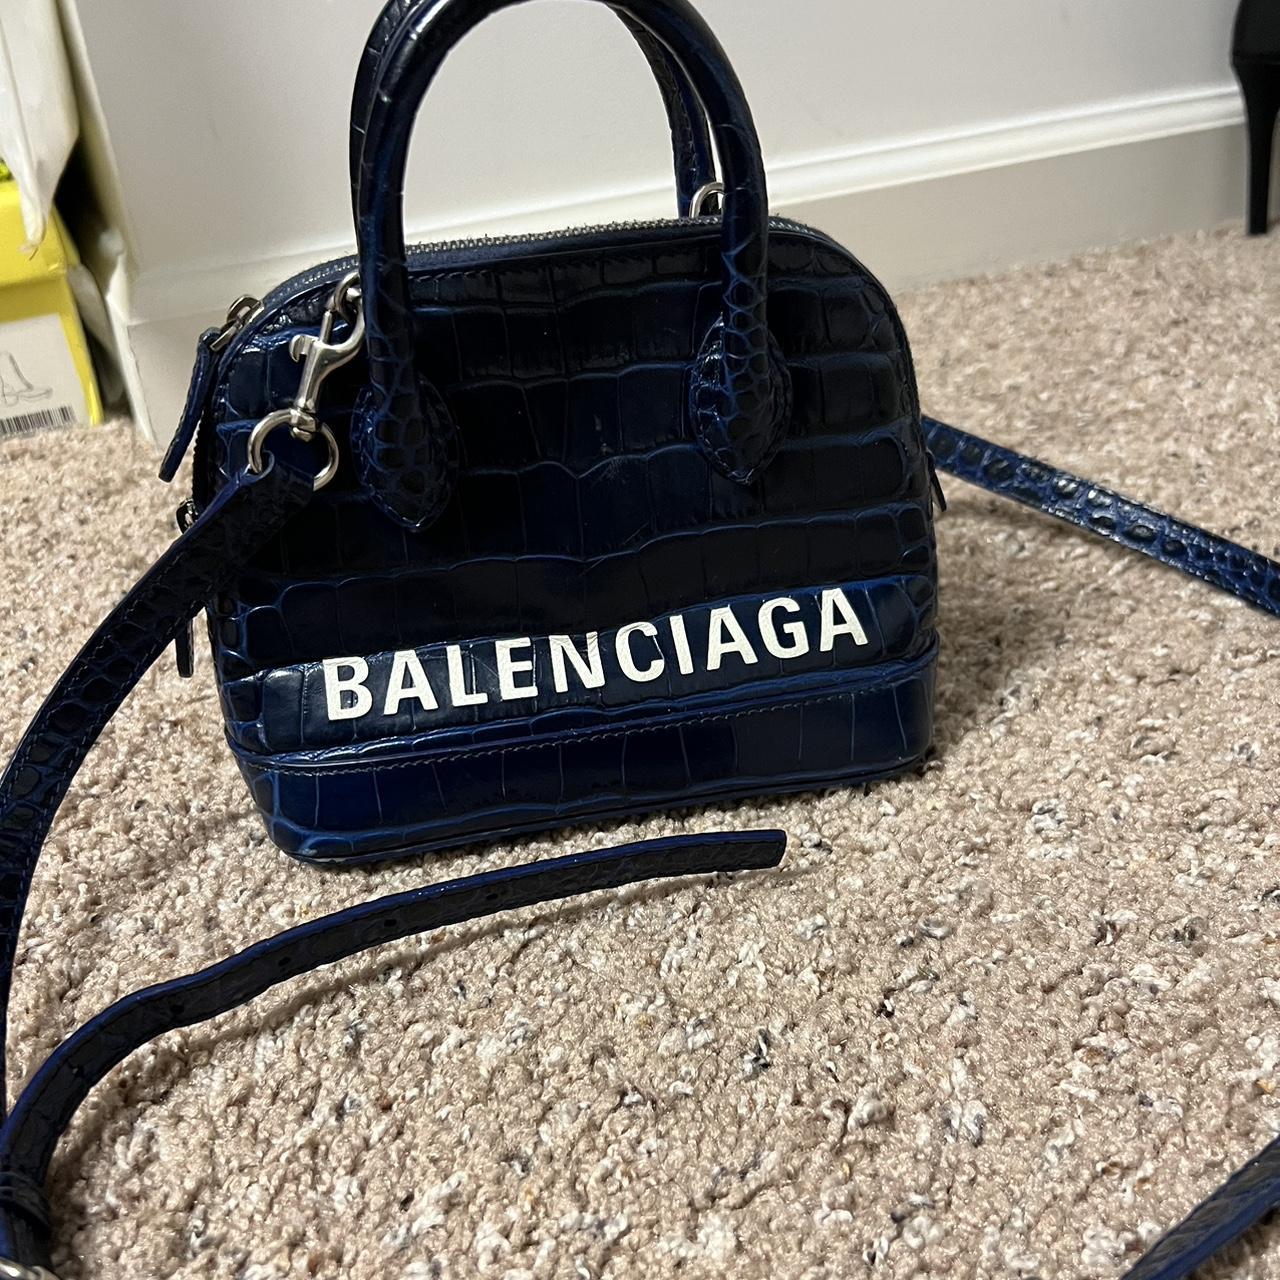 Balenciaga Women's Navy and Blue Bag